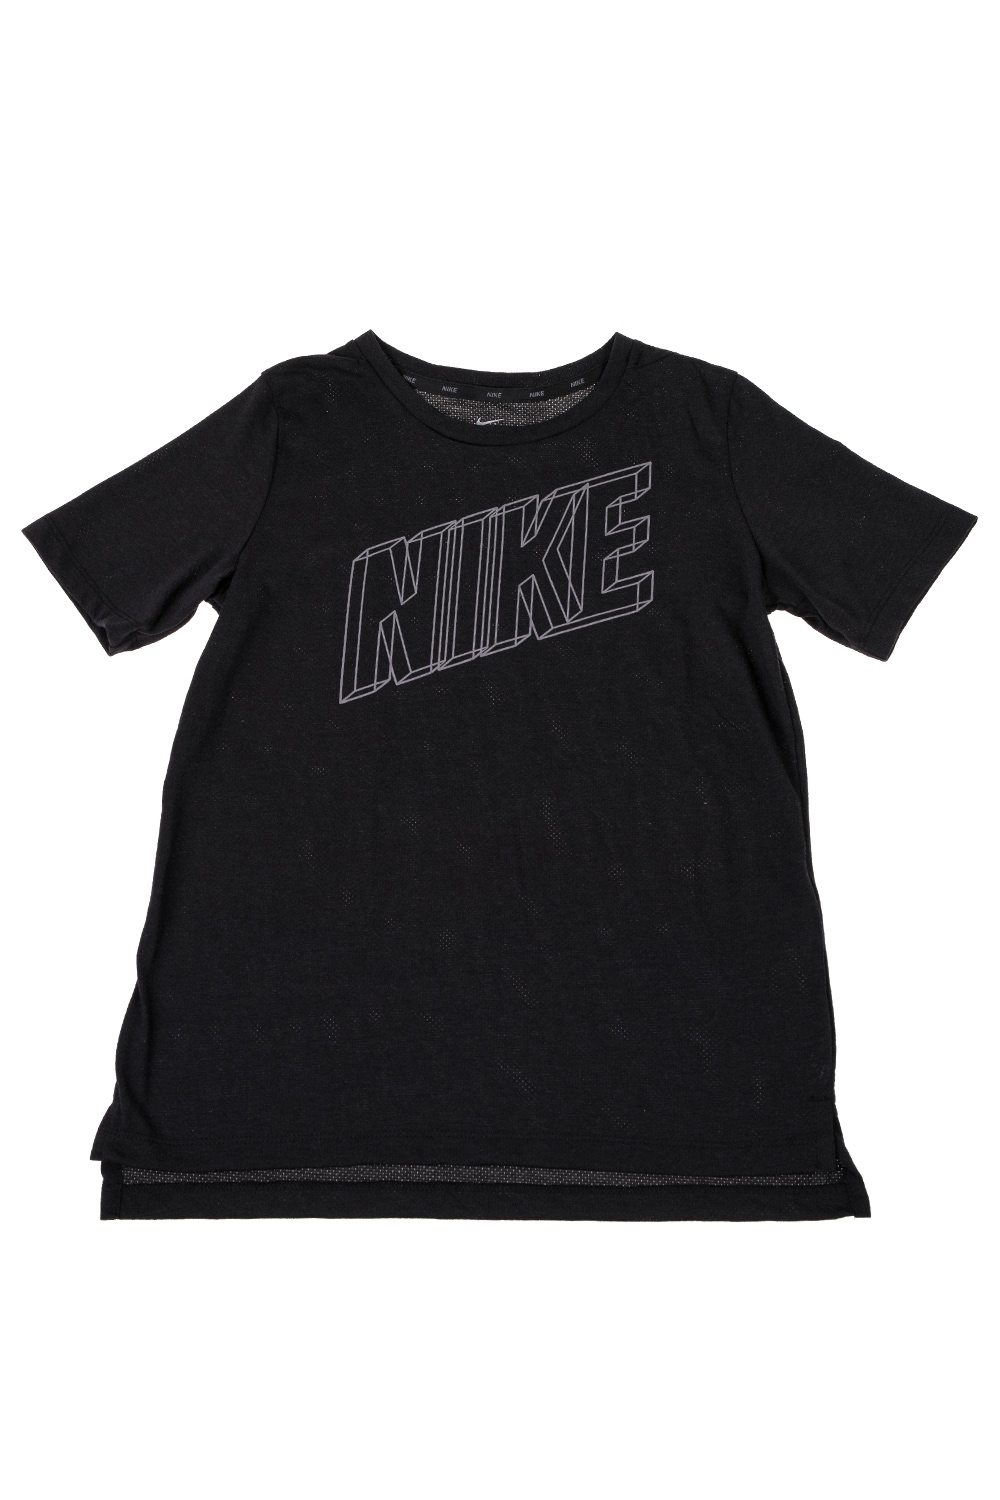 Παιδικά/Boys/Ρούχα/Αθλητικά NIKE - Παιδικό t-shirt NIKE BREATHE GFXS μαύρο